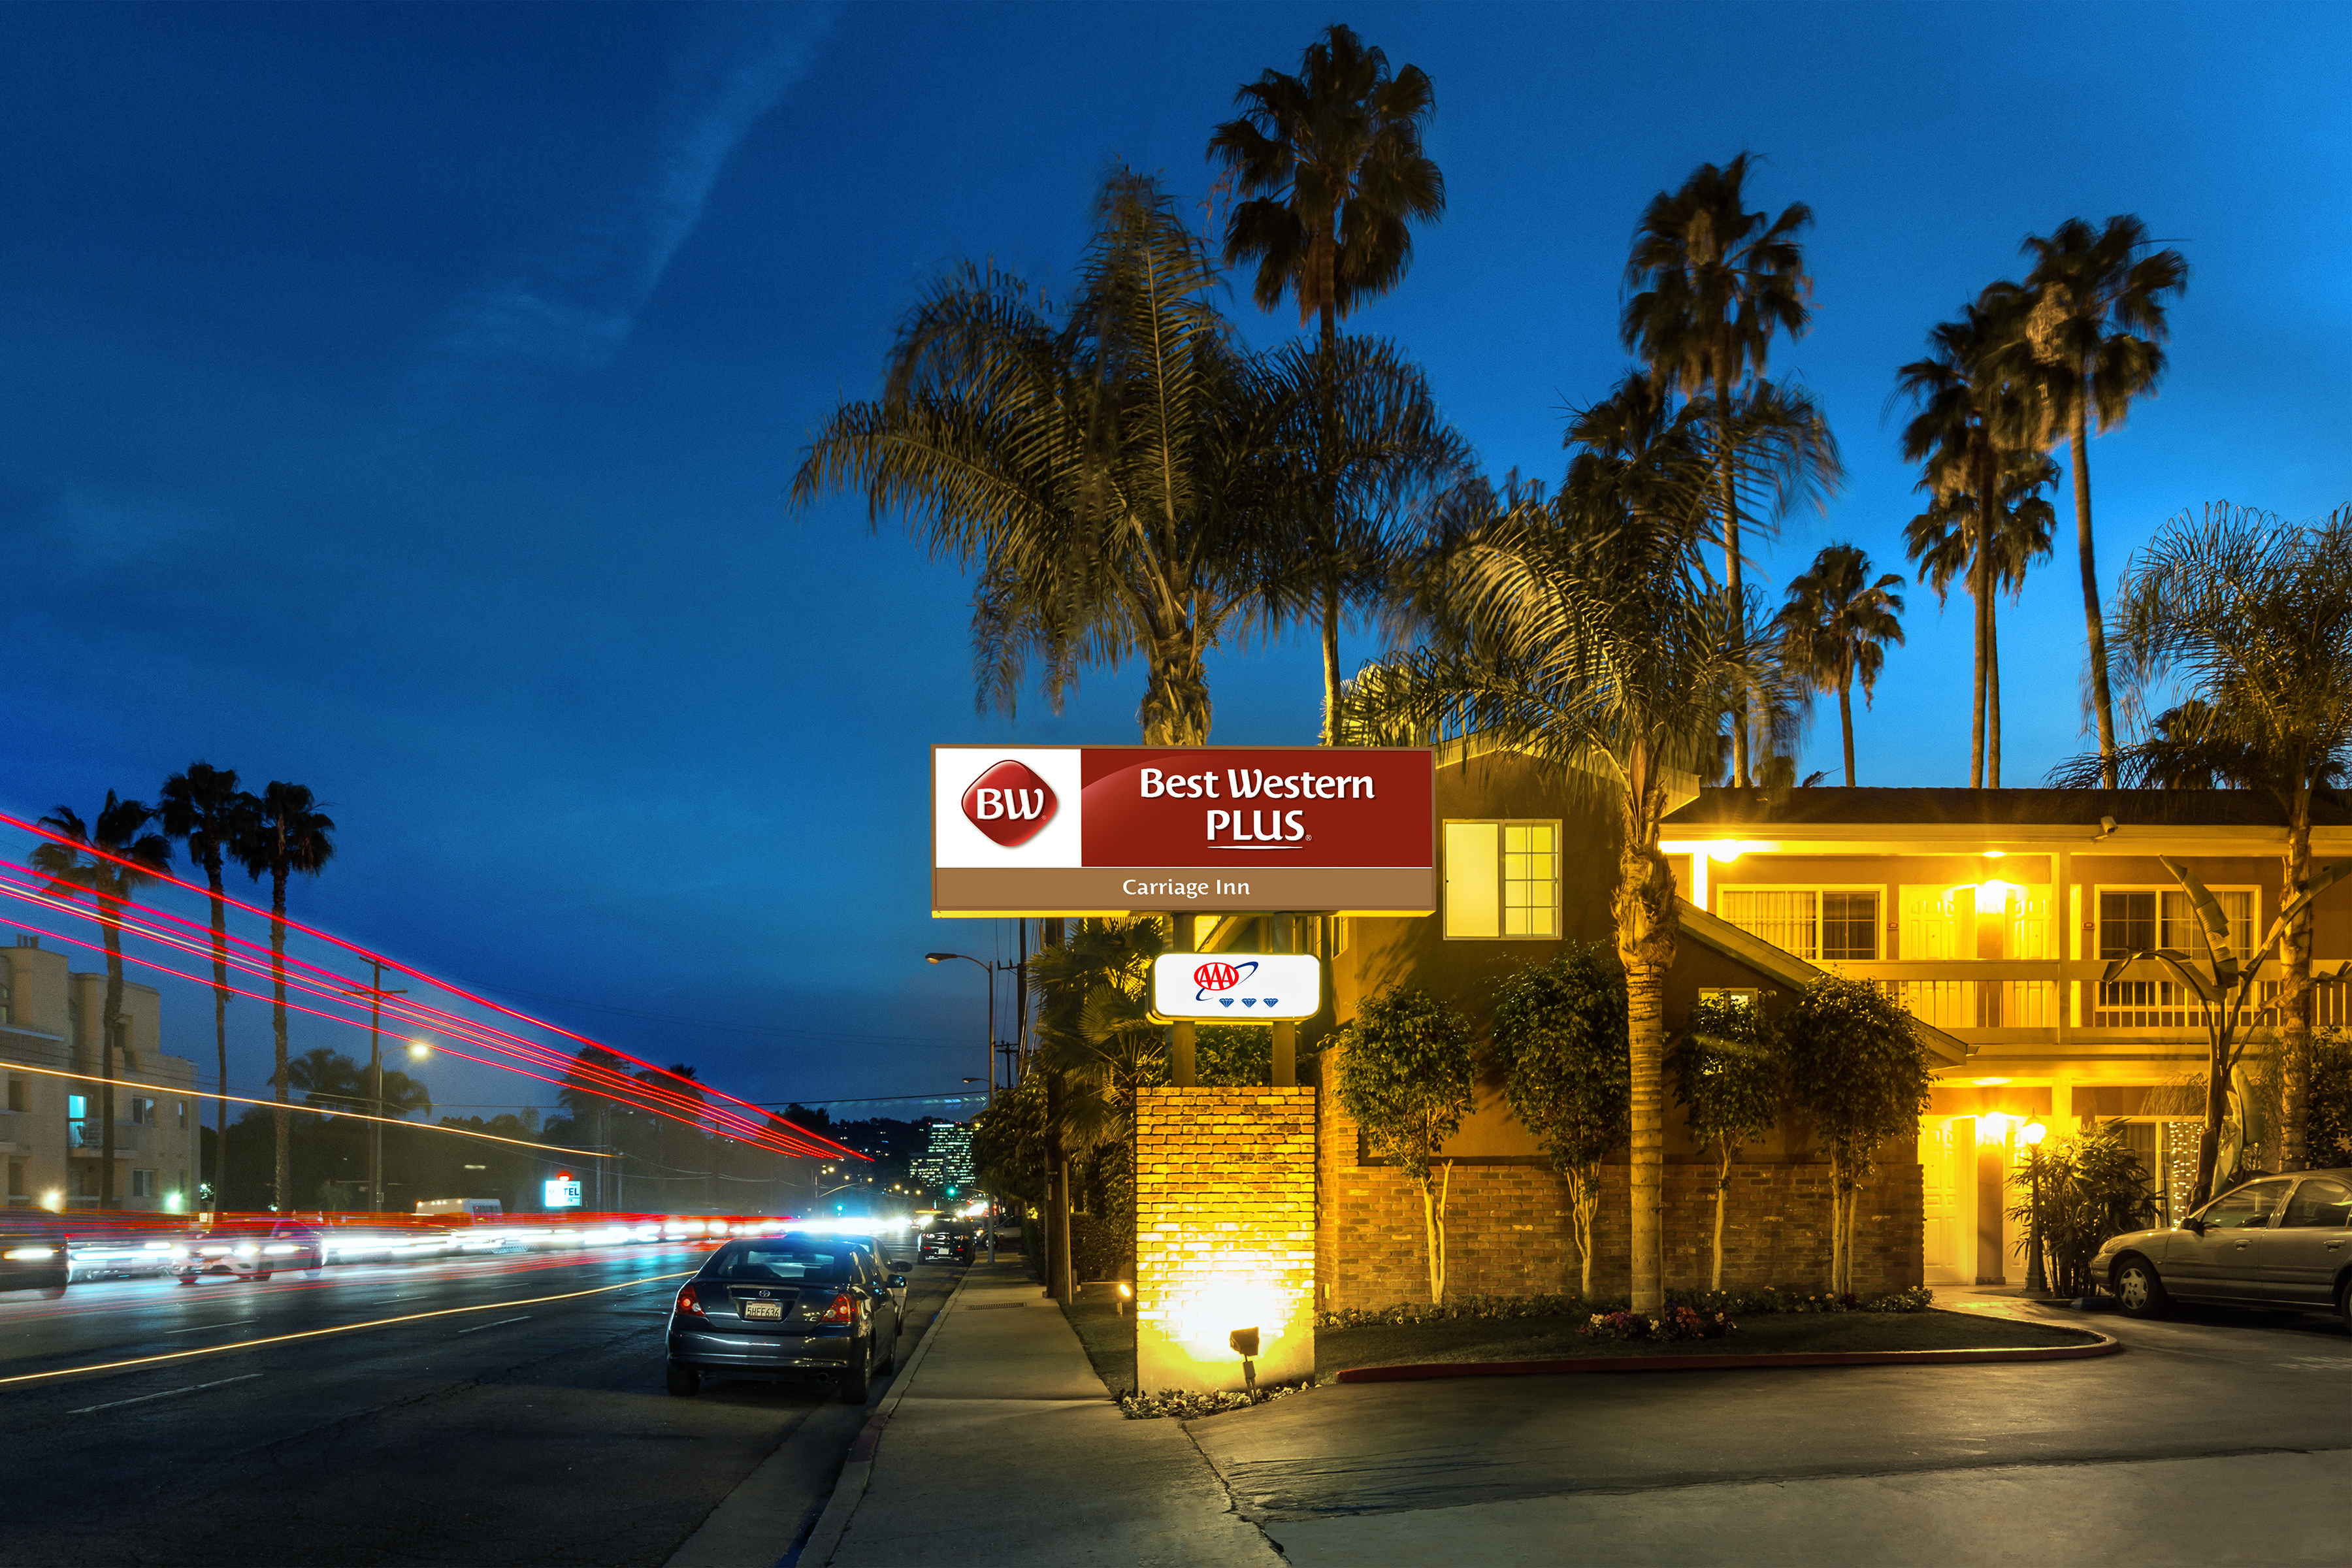 Photo of Best Western Plus Carriage Inn, Sherman Oaks, CA